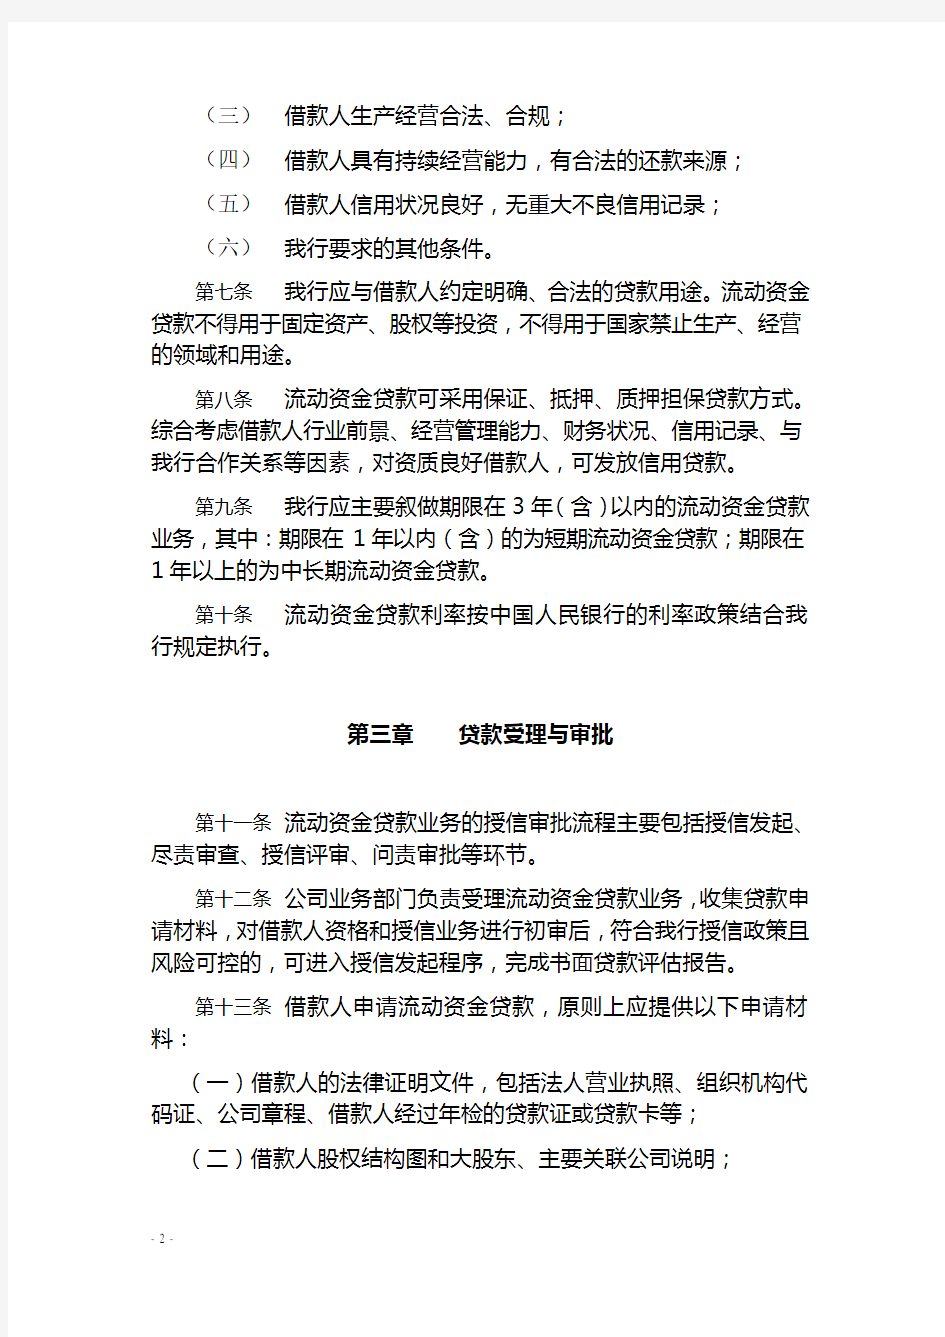 中国银行股份有限公司流动资金贷款管理办法(2010年版)